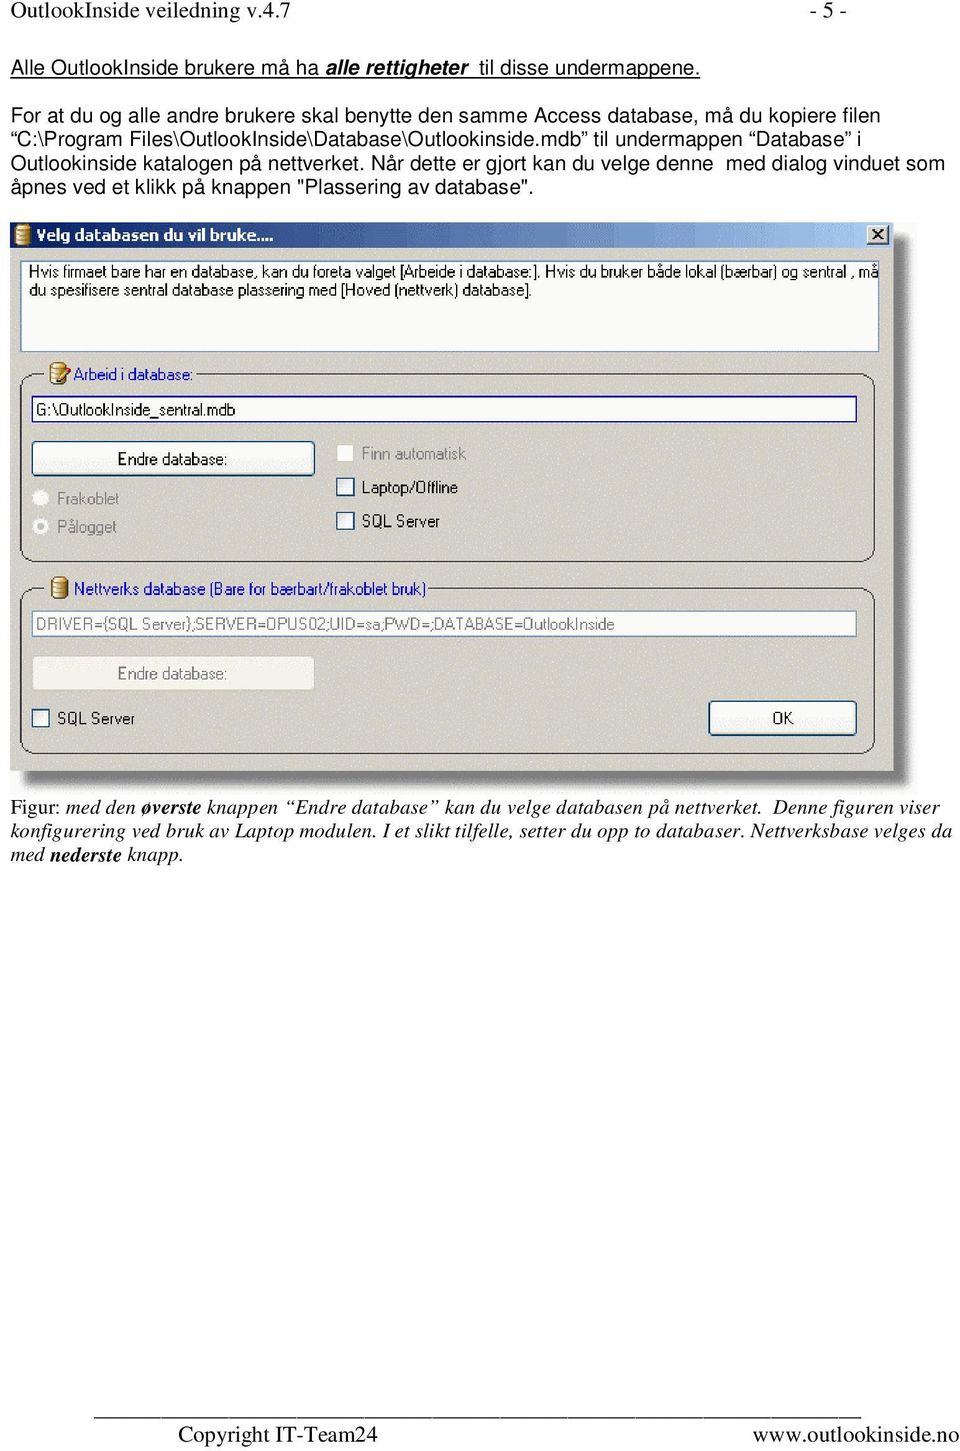 mdb til undermappen Database i Outlookinside katalogen på nettverket.